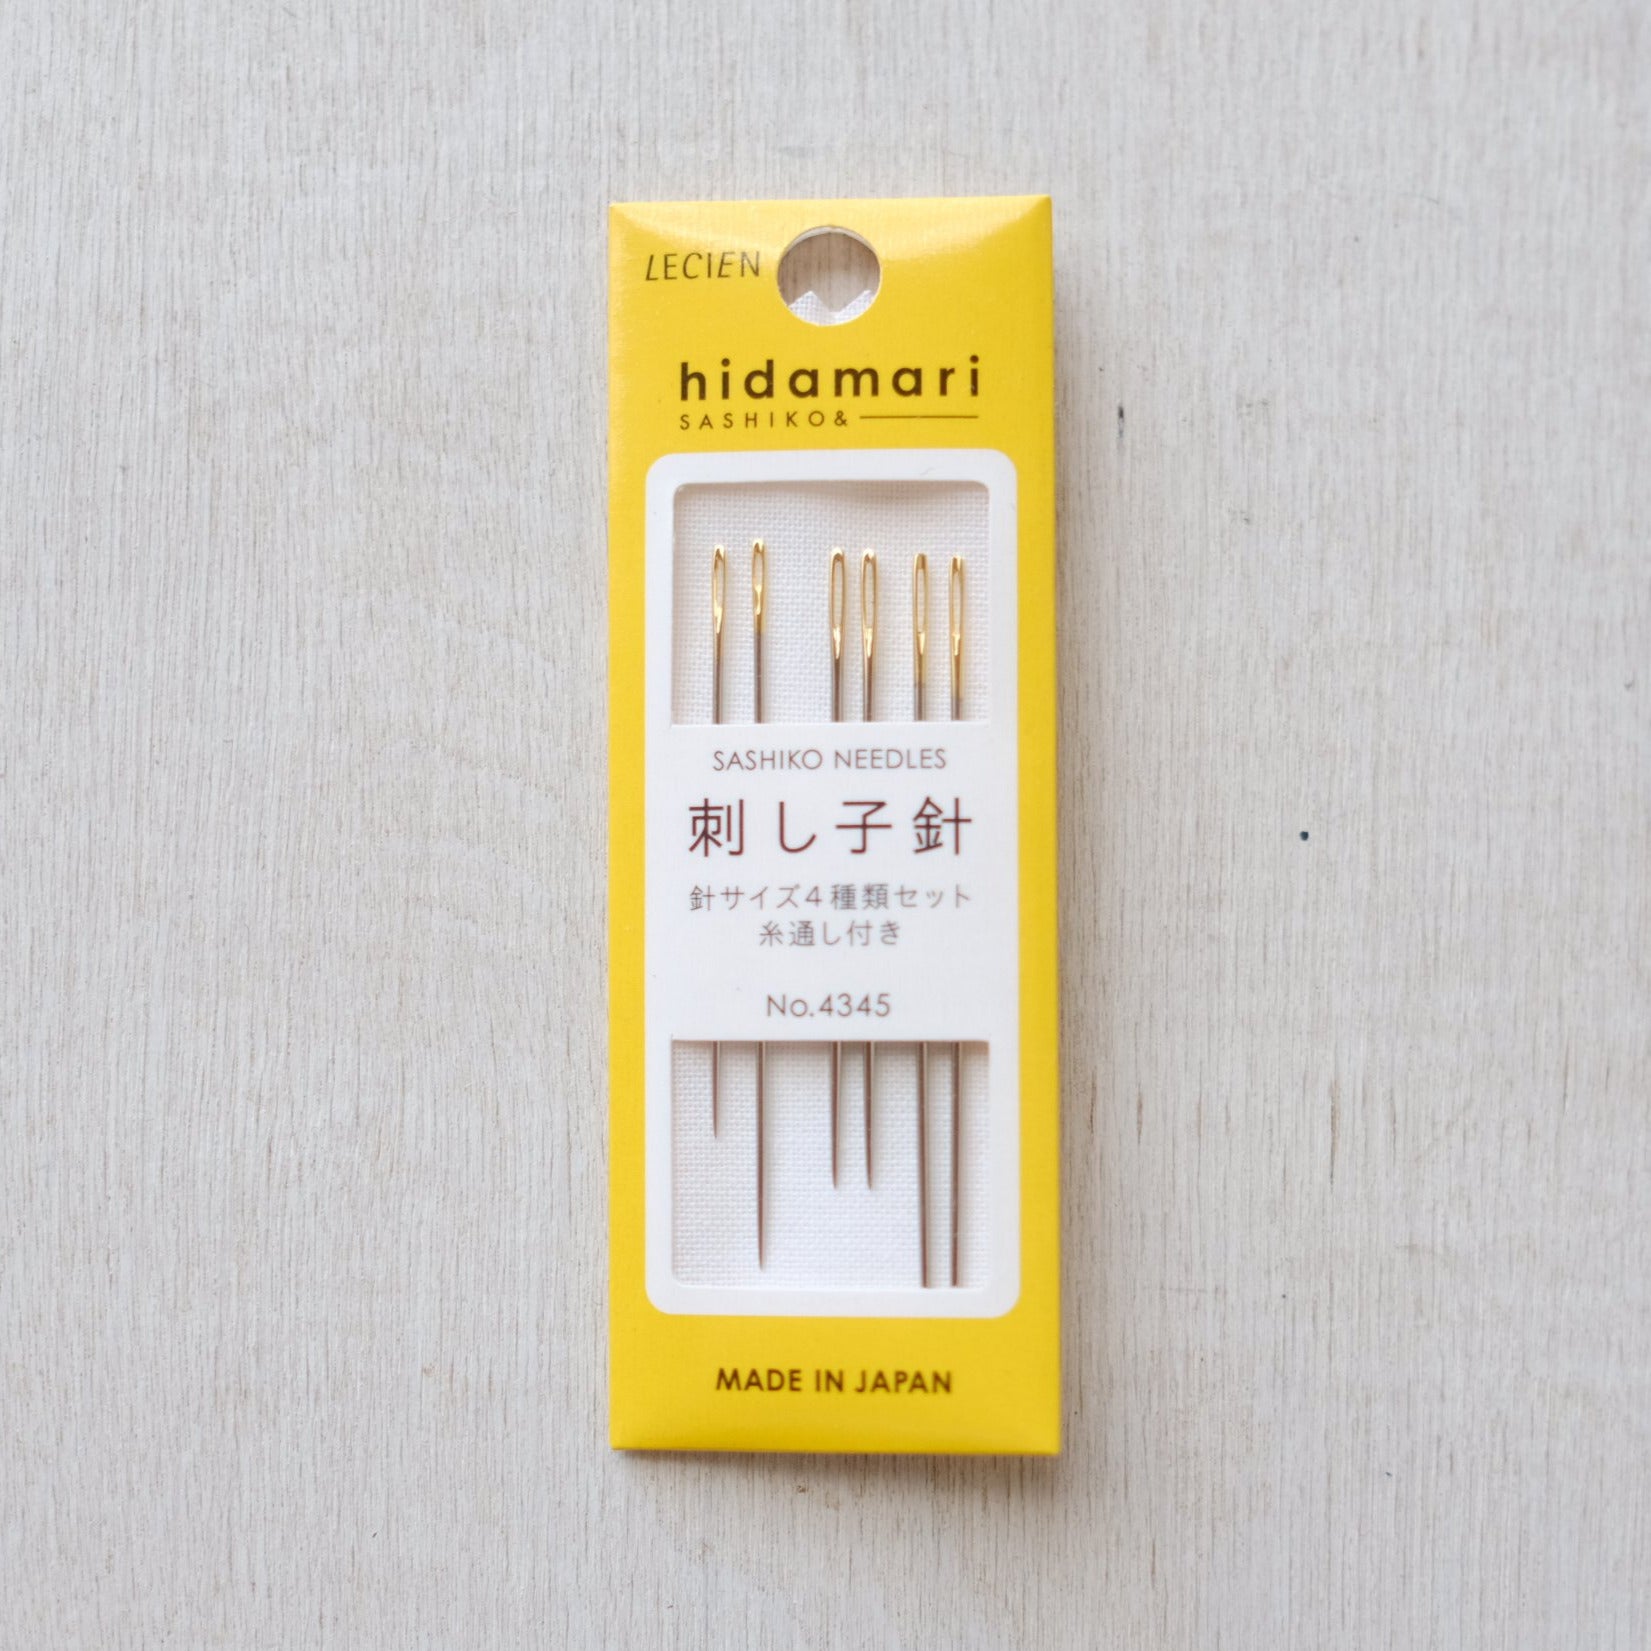 Label: Hidamari